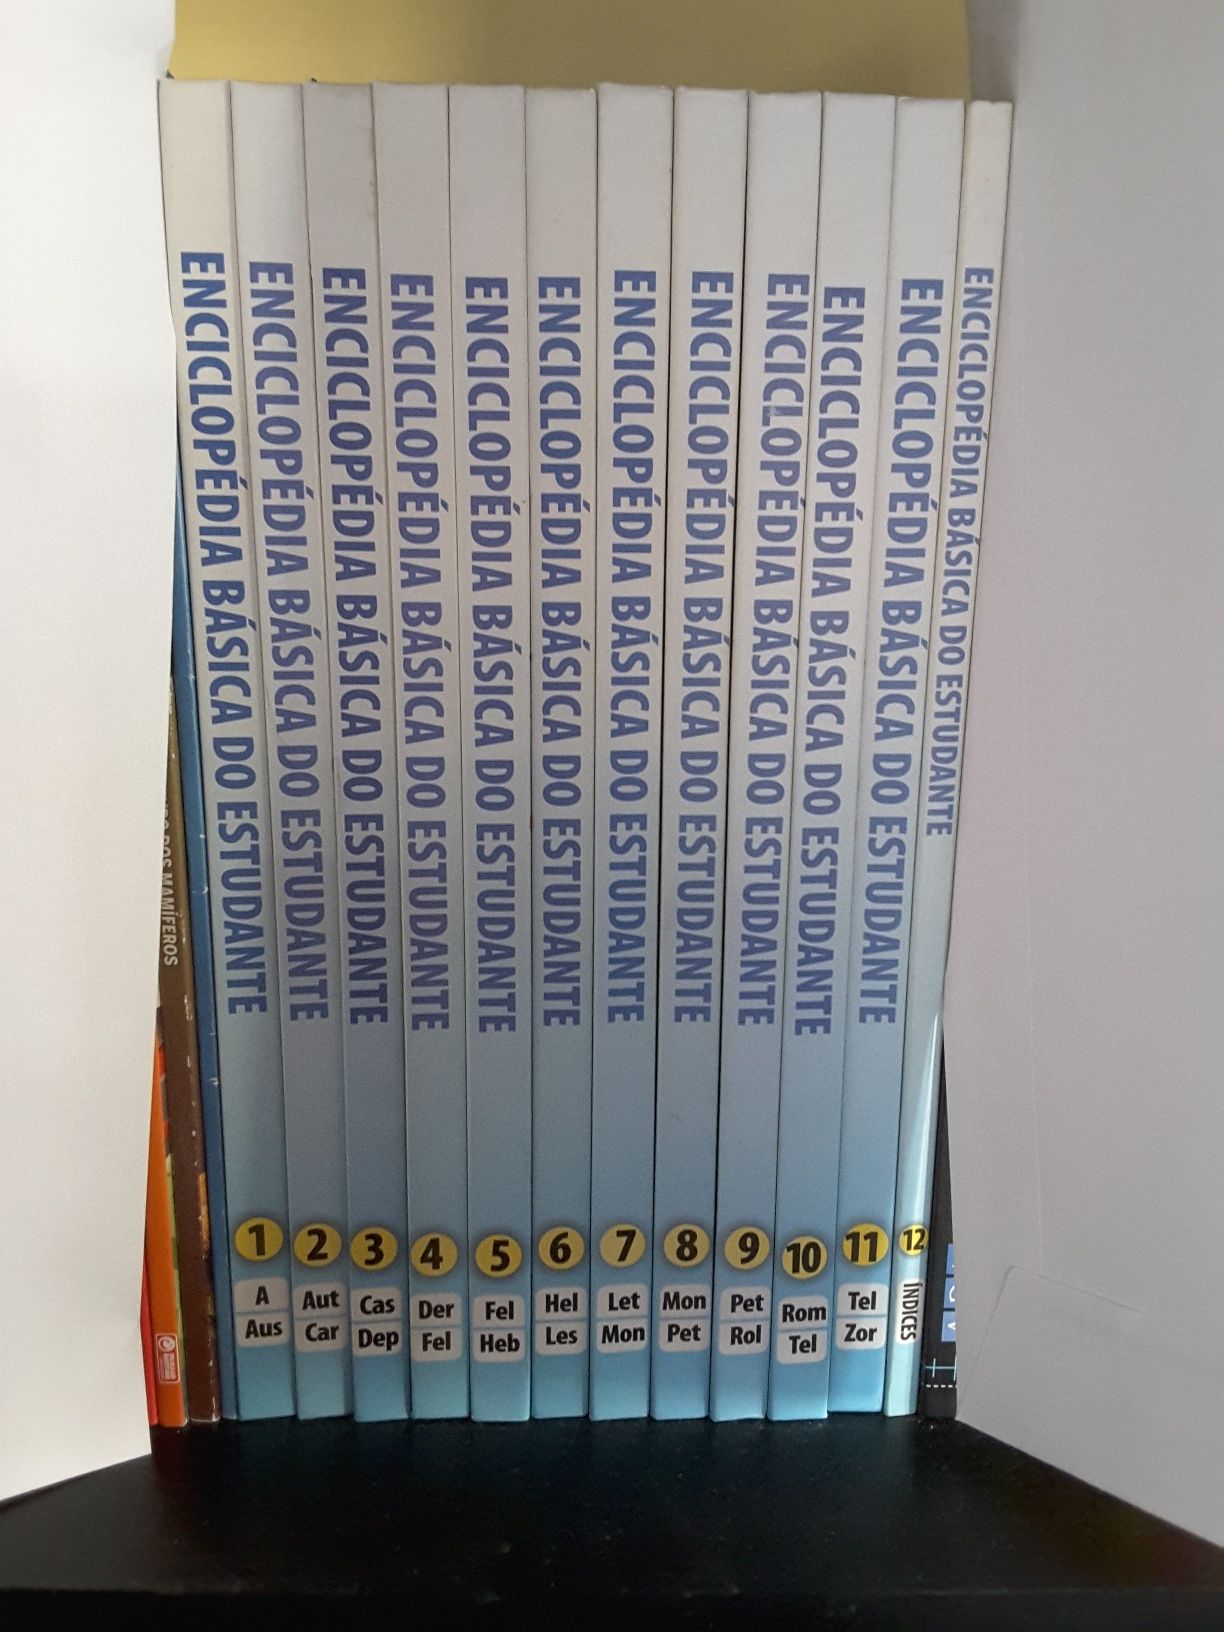 Enciclopédia Básica do estudante - 12 volumes - Nova